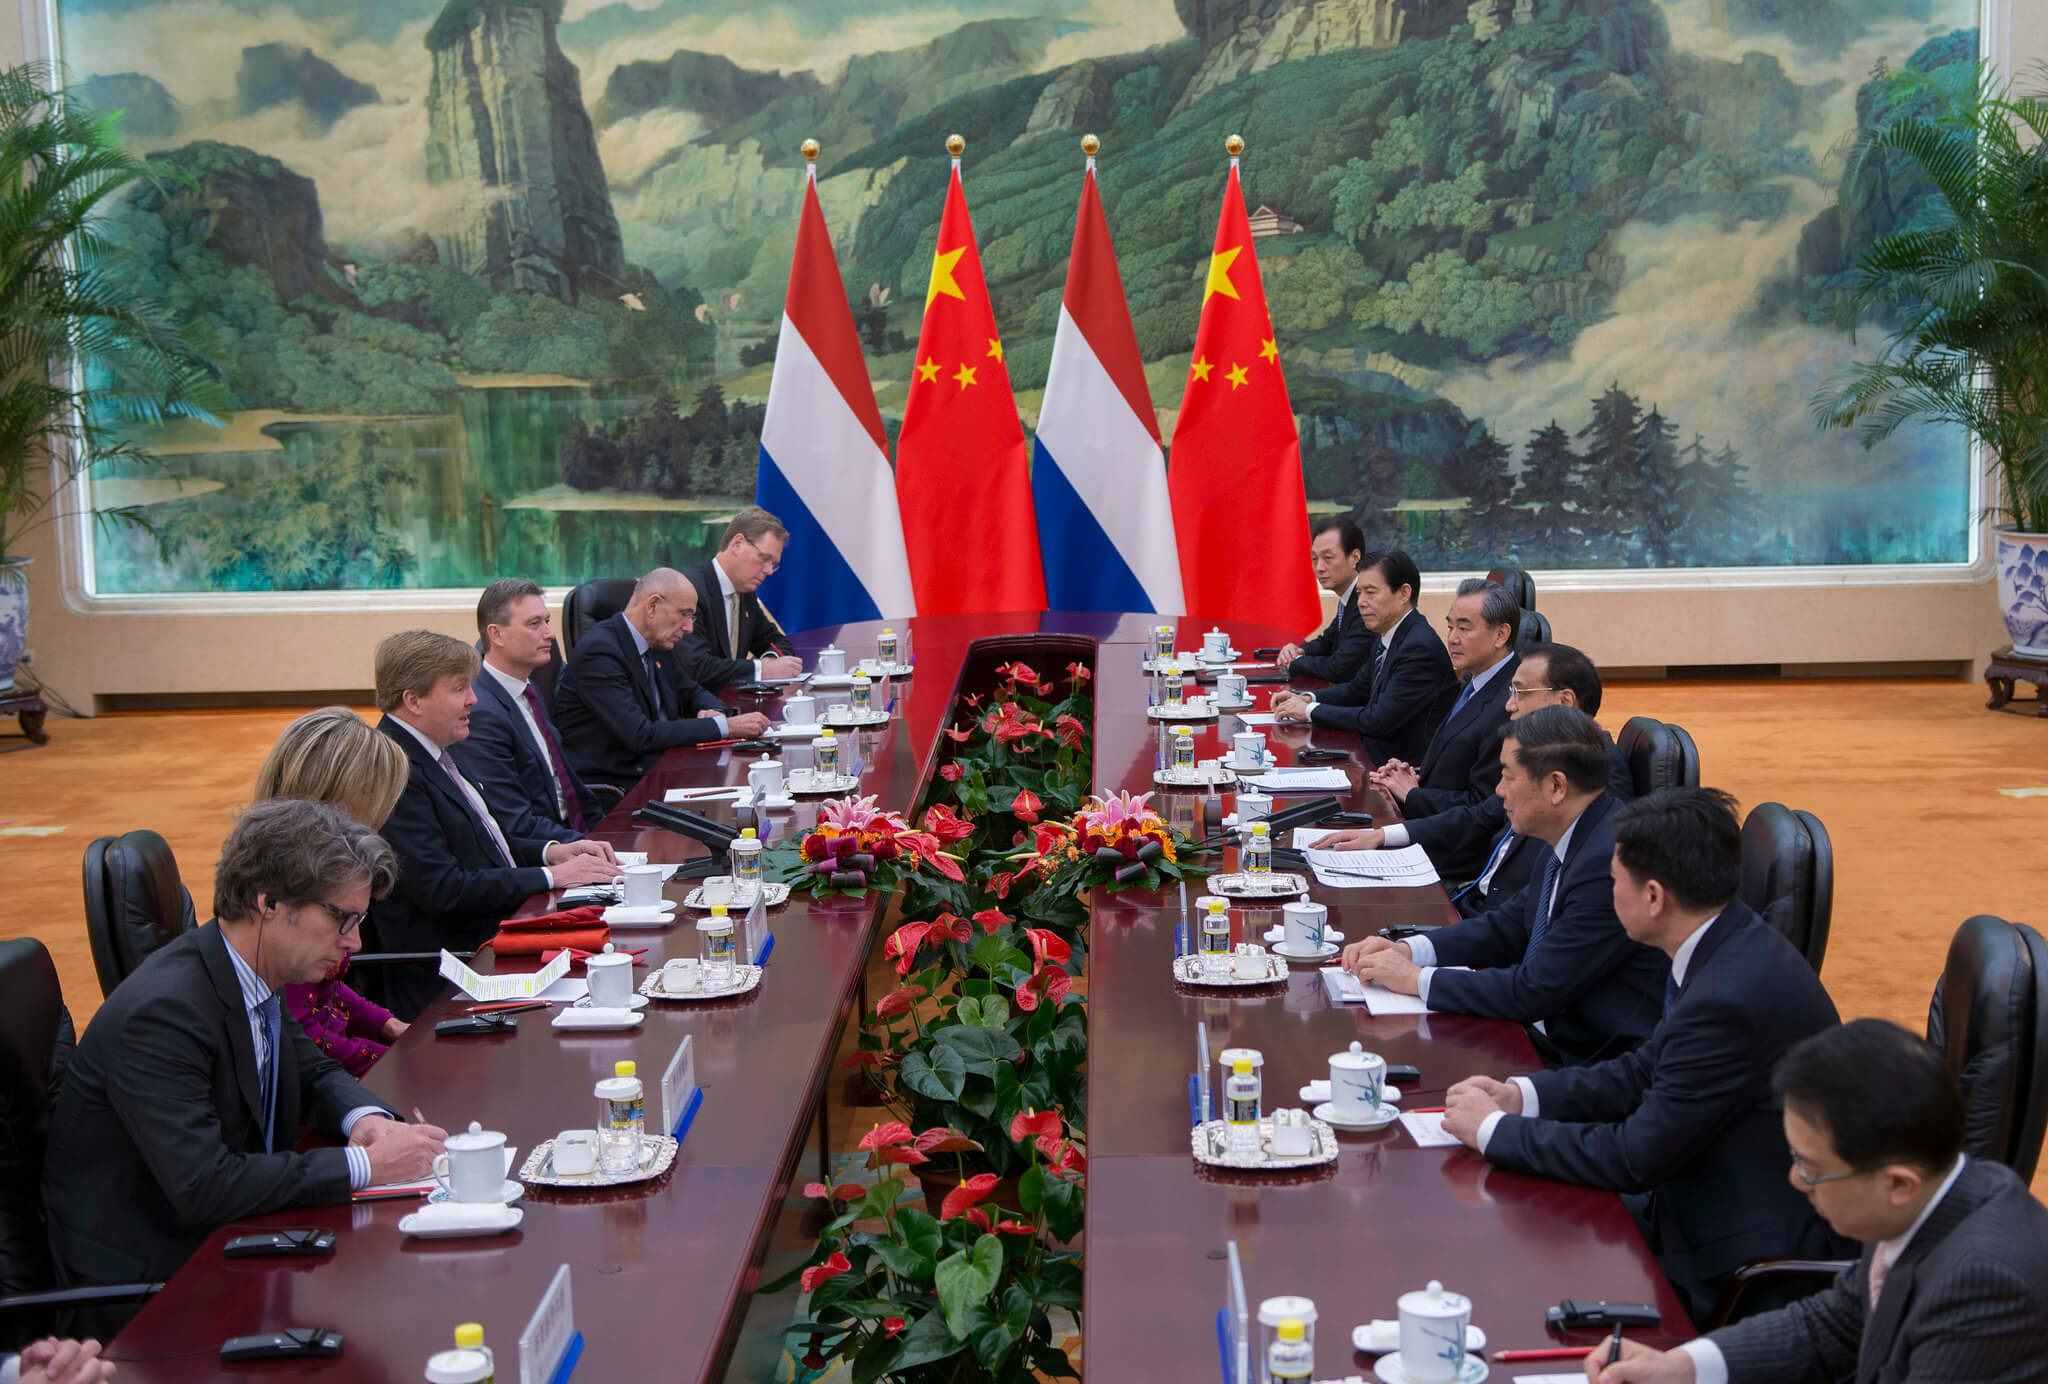 Koning Willem-Alexander en Hare Majesteit Koningin Maxima brengen op uitnodiging van president Xi Jinping van de Volksrepubliek China een werkbezoek aan China in februari 2018 - Ministerie van Buitenlandse Zaken